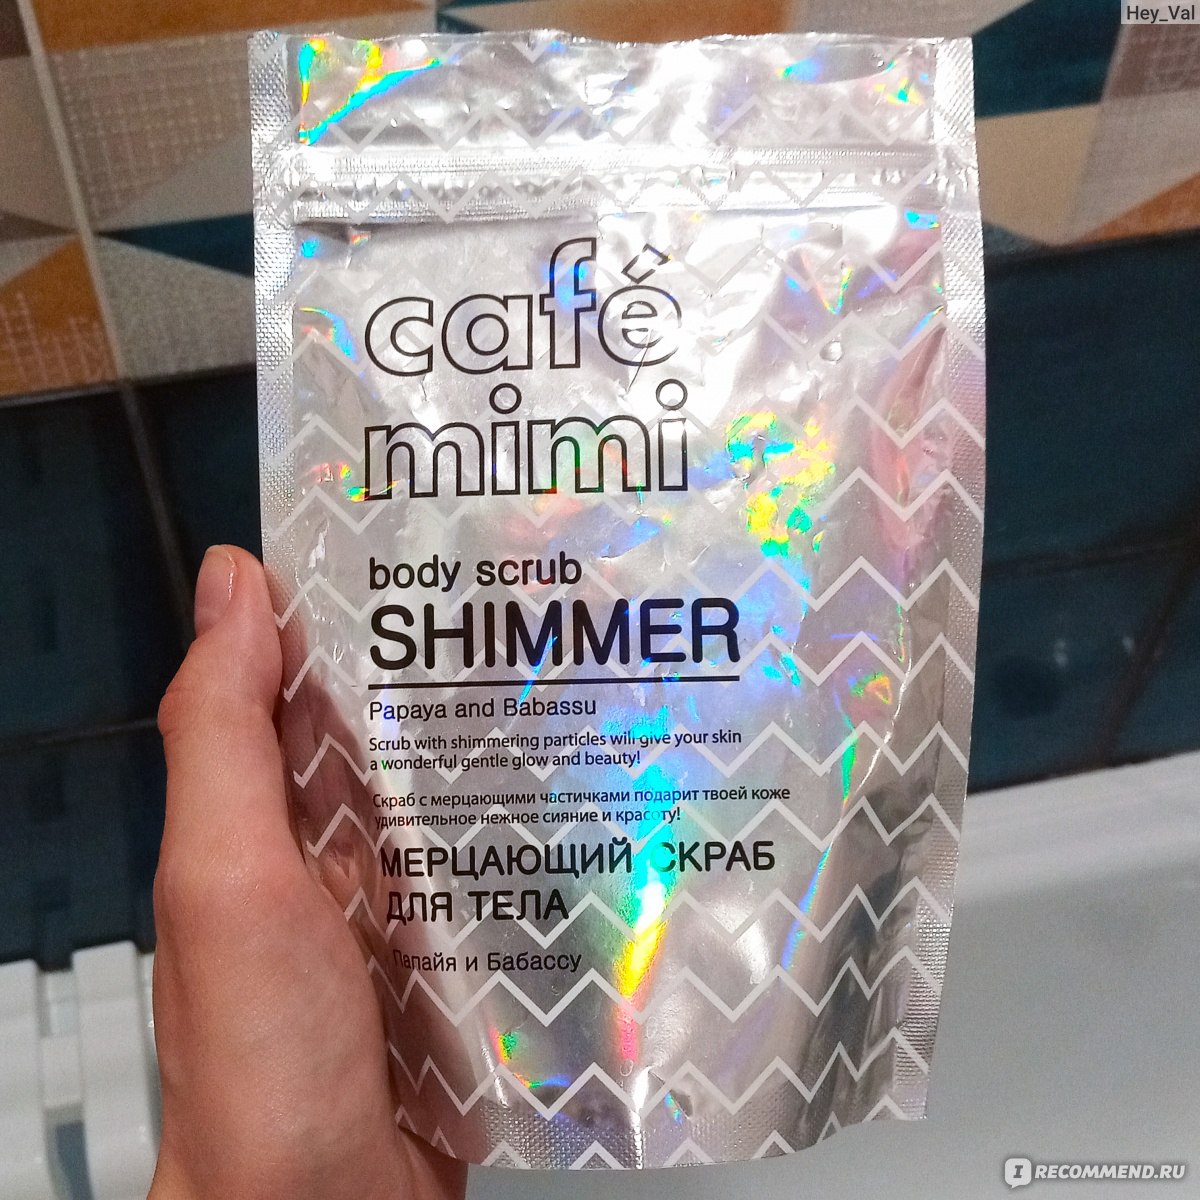 Скрабы cafe mimi. Мерцающий скраб для тела Cafe Mimi. Cafe Mimi скраб для тела Шиммер. Cafe Mini Shimmer скраб. Cafe Mini мерцающий скраб.